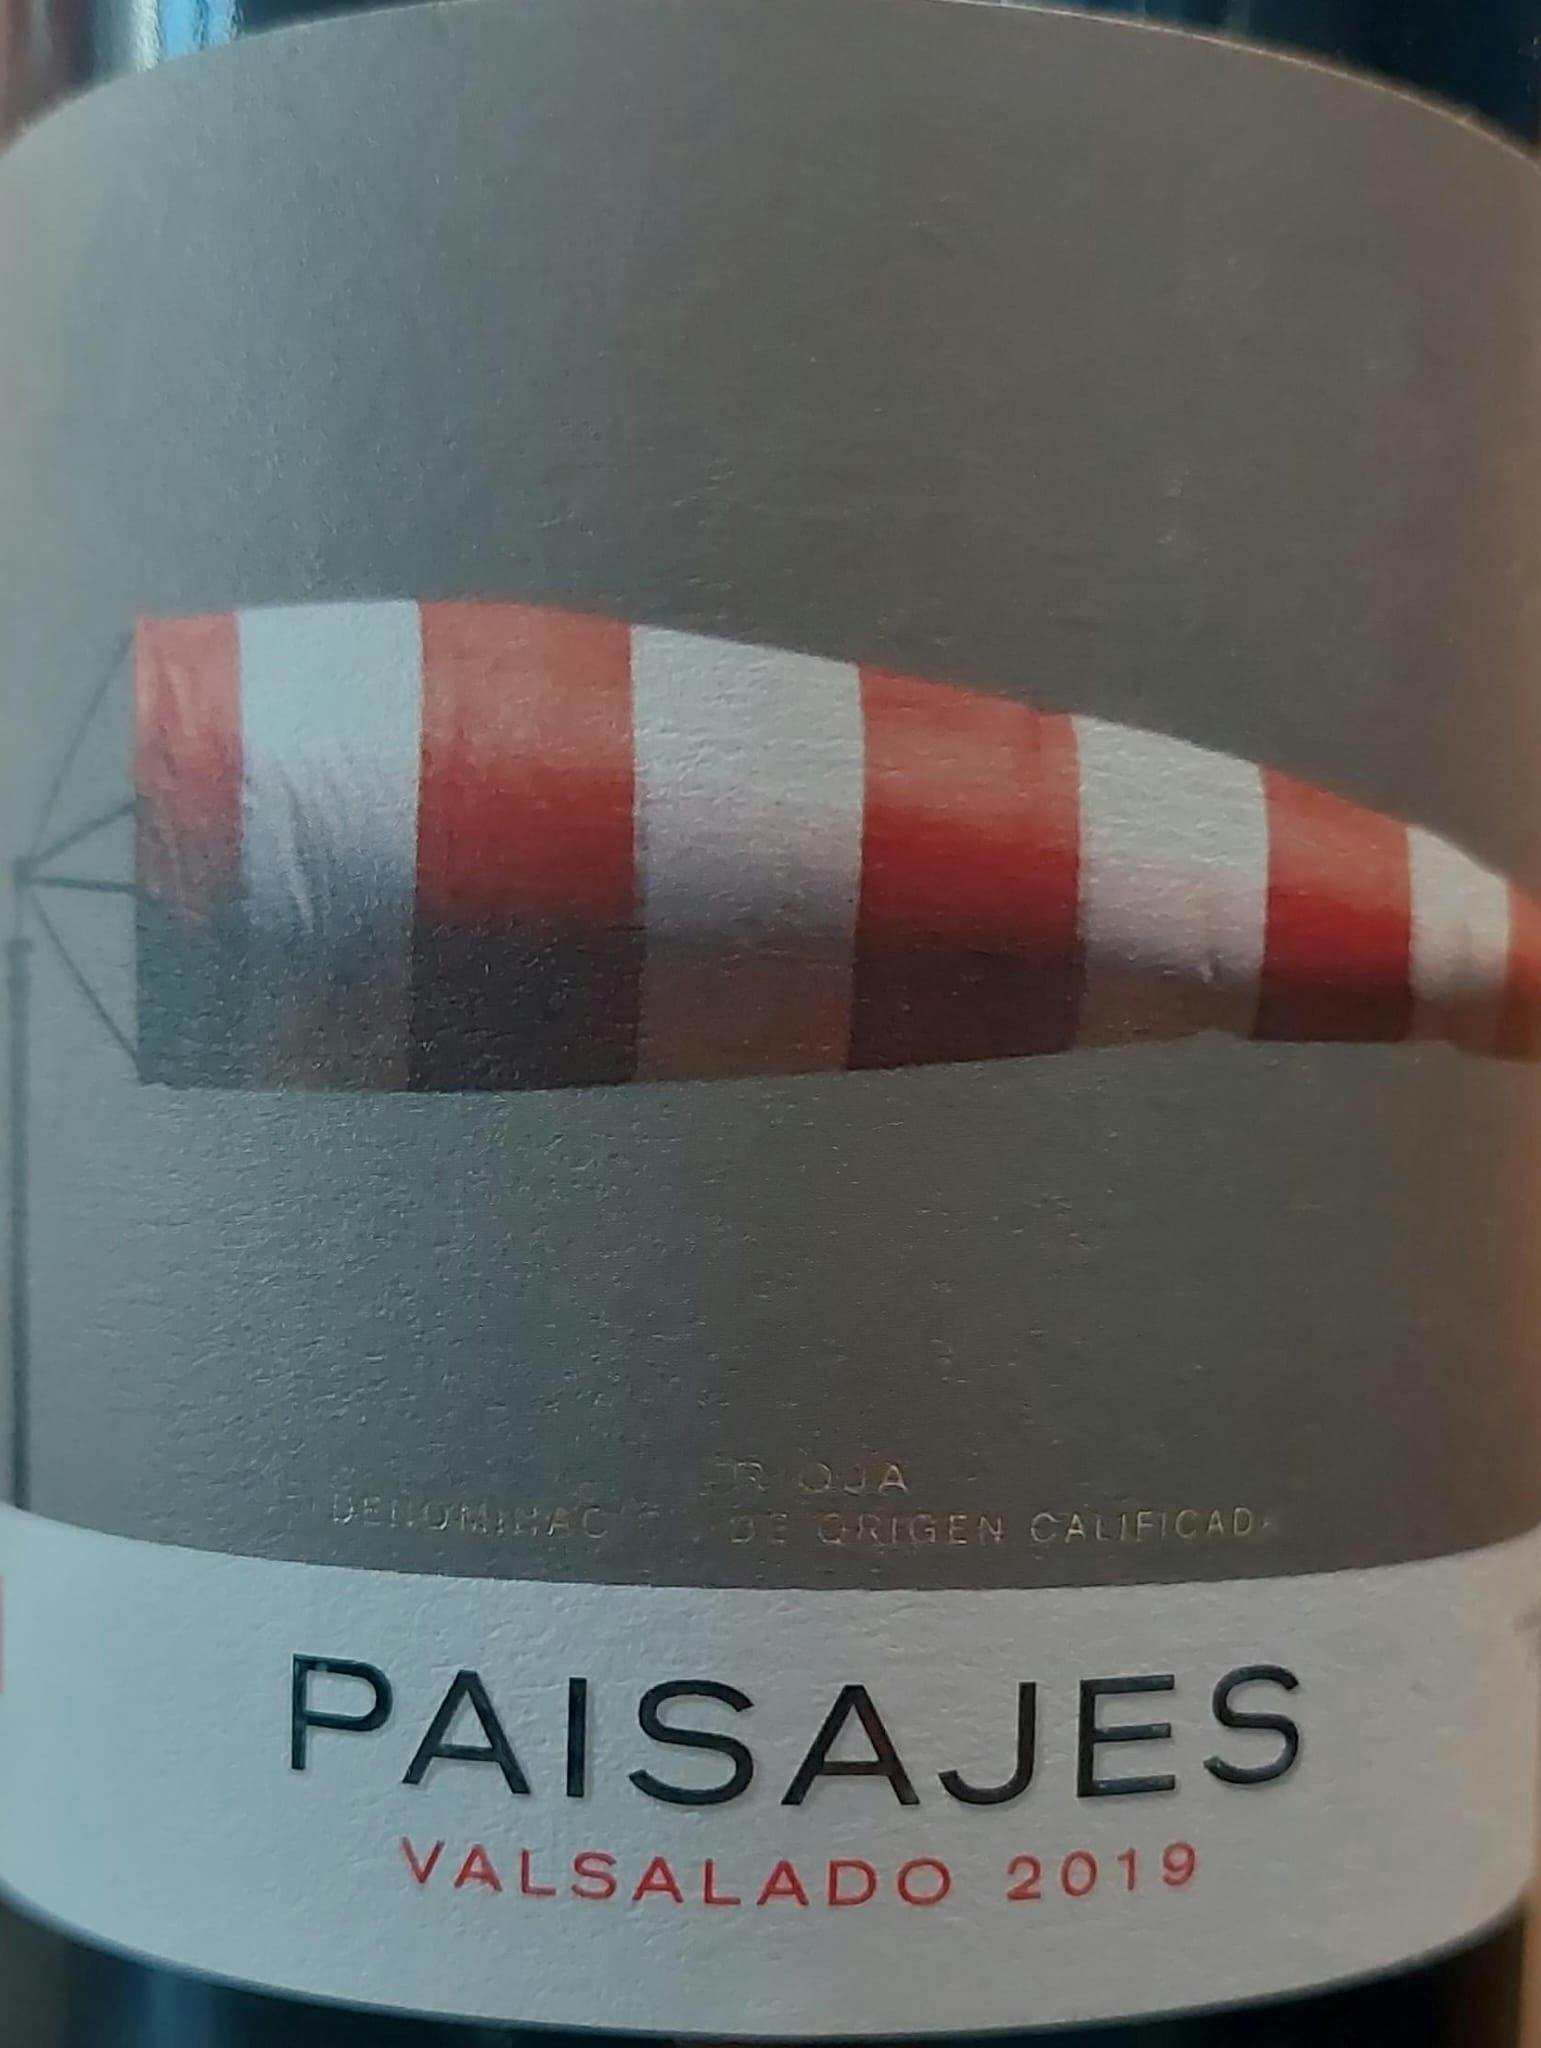 Paisajes Valdasano 2019 | Paisajes y Viñedos